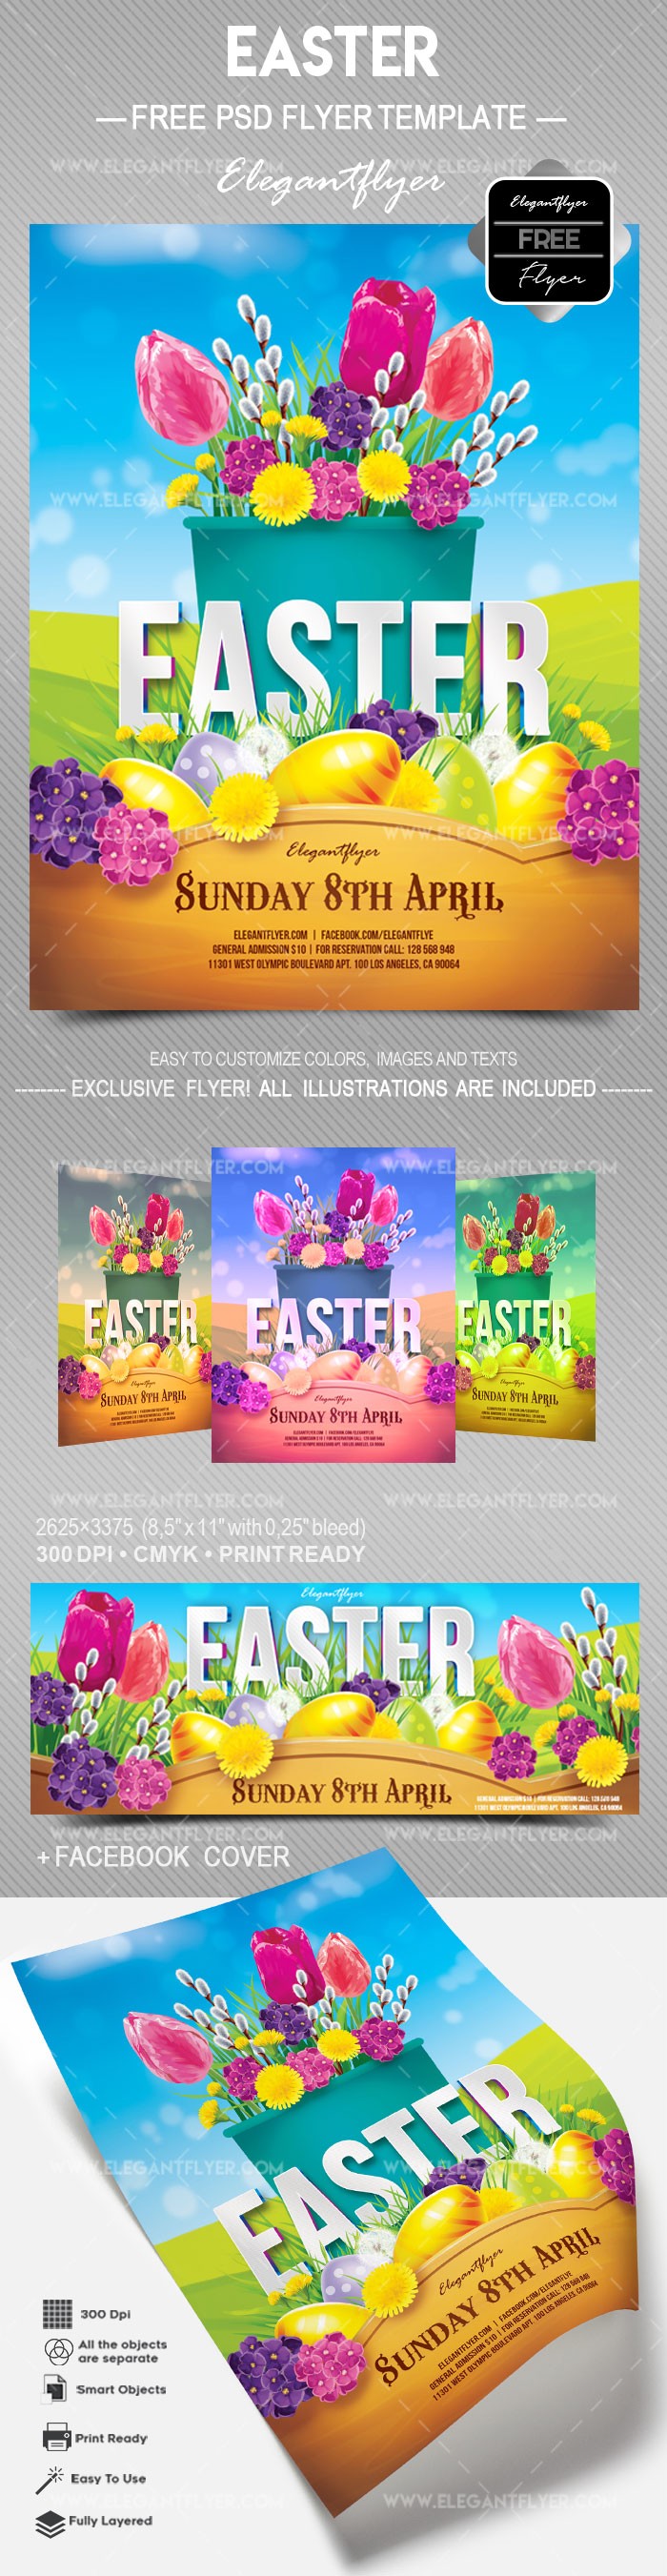 Invitation For Easter by ElegantFlyer